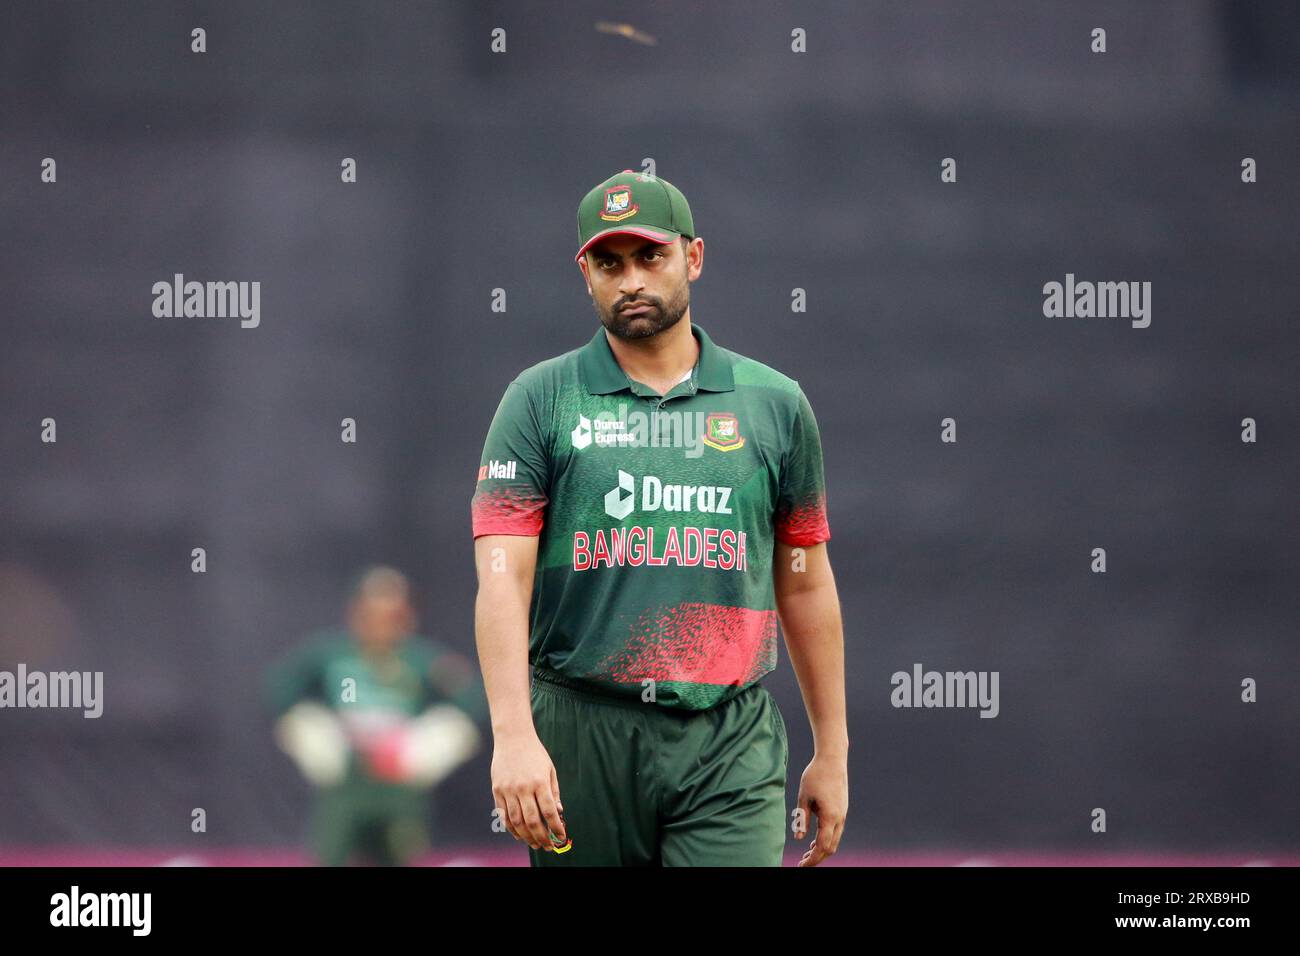 Il bengalese Tamim Iqbal Khan ha aperto la gara durante la seconda partita ODI del Bangladesh e della nuova Zelanda allo Sher-e-Bangla National Cricket Stadium di Mirpur, DH Foto Stock